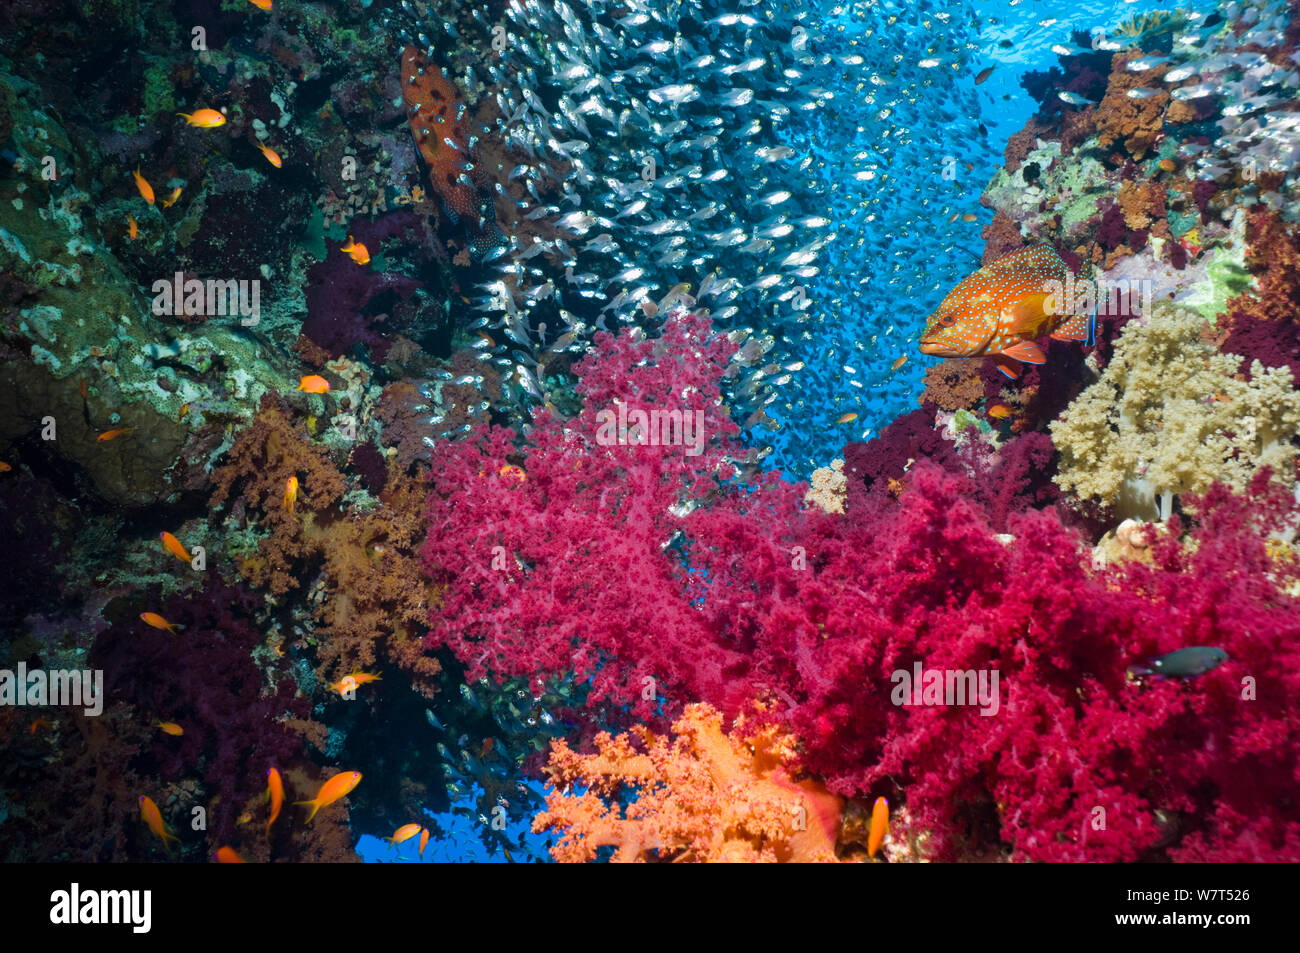 Coral reef paesaggi con coralli molli (Dendronephthya sp), un corallo hind (Cephalopholus miniata) e spazzatrici pigmeo (Parapriacanthus guentheri) Egitto, Mar Rosso. Foto Stock